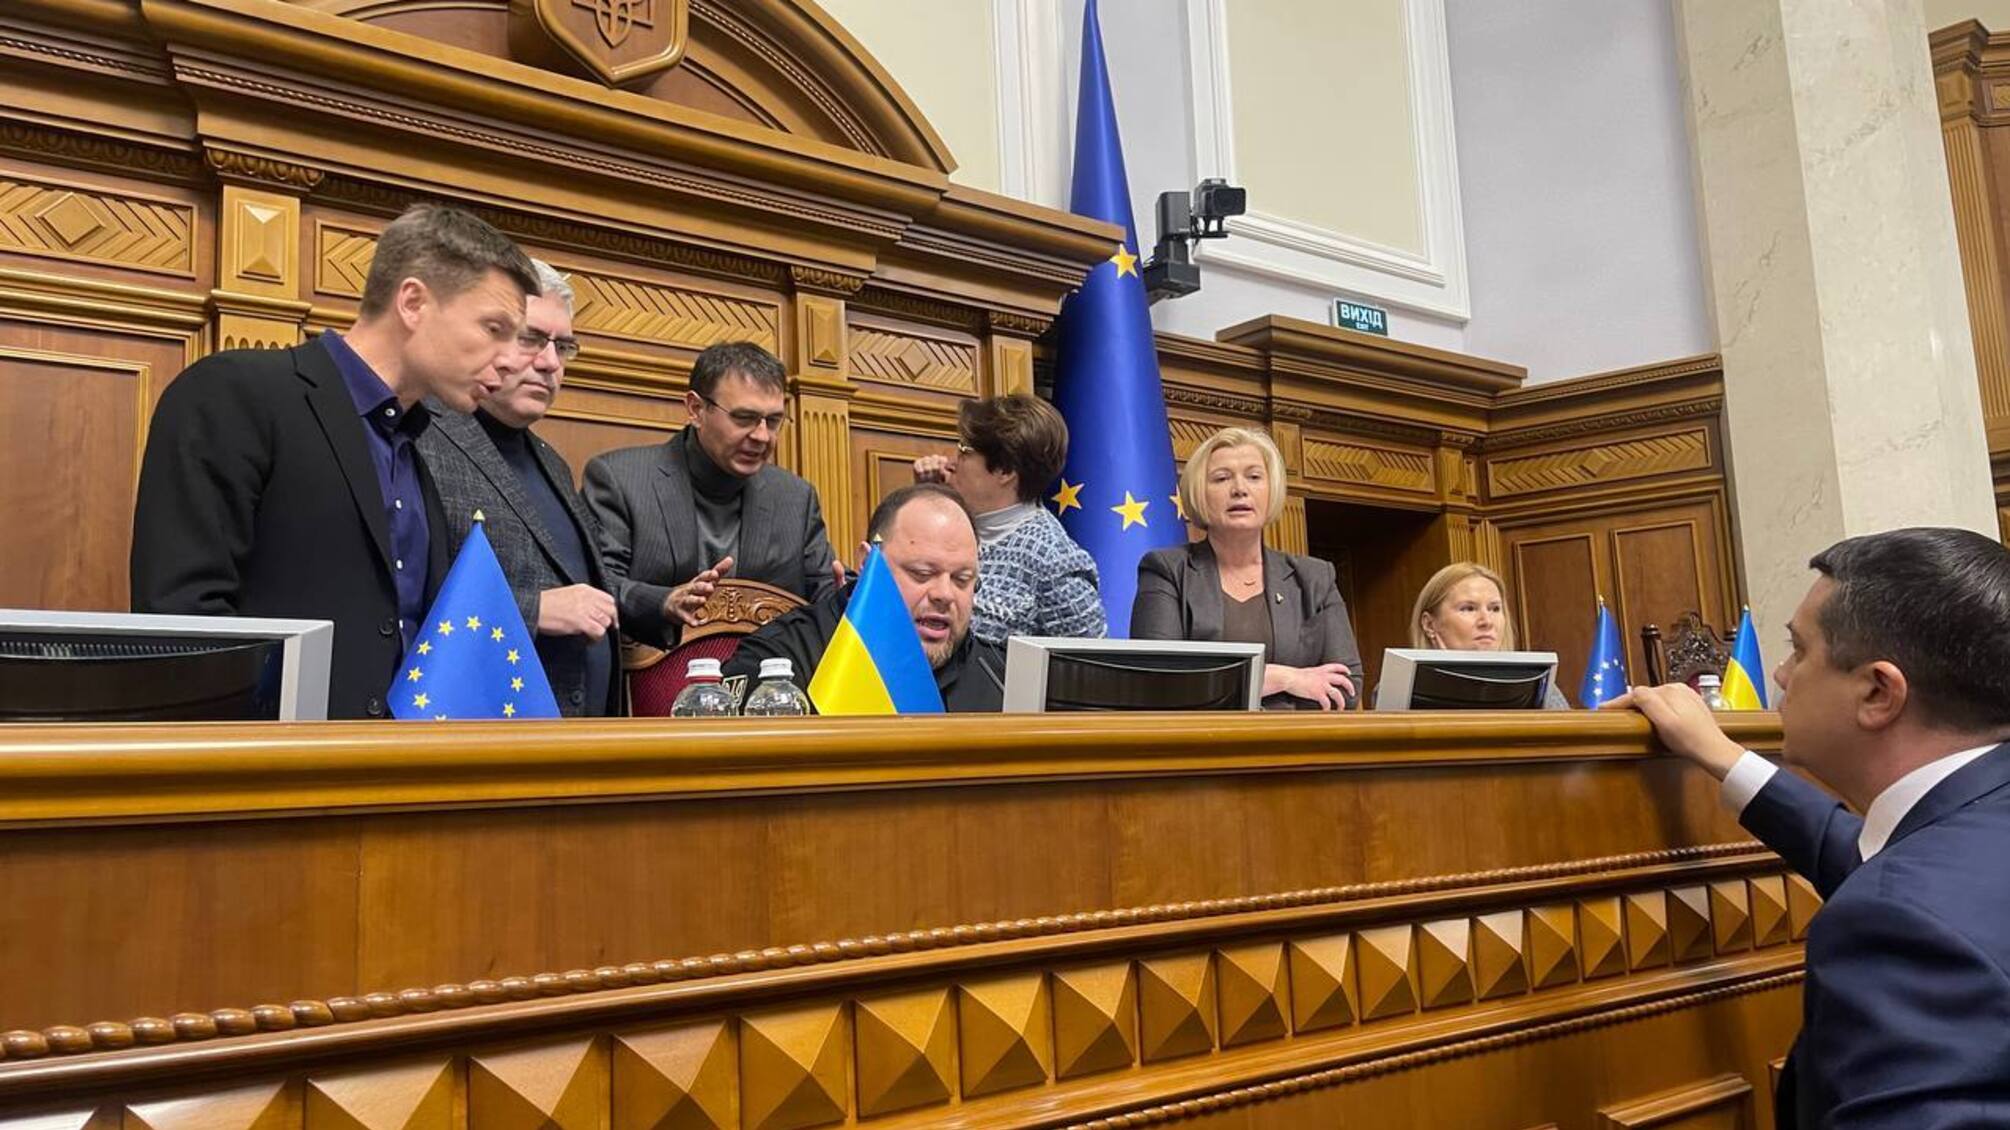 Заседание сорвали: в парламенте заблокировали трибуну из-за нардепа Безуглой